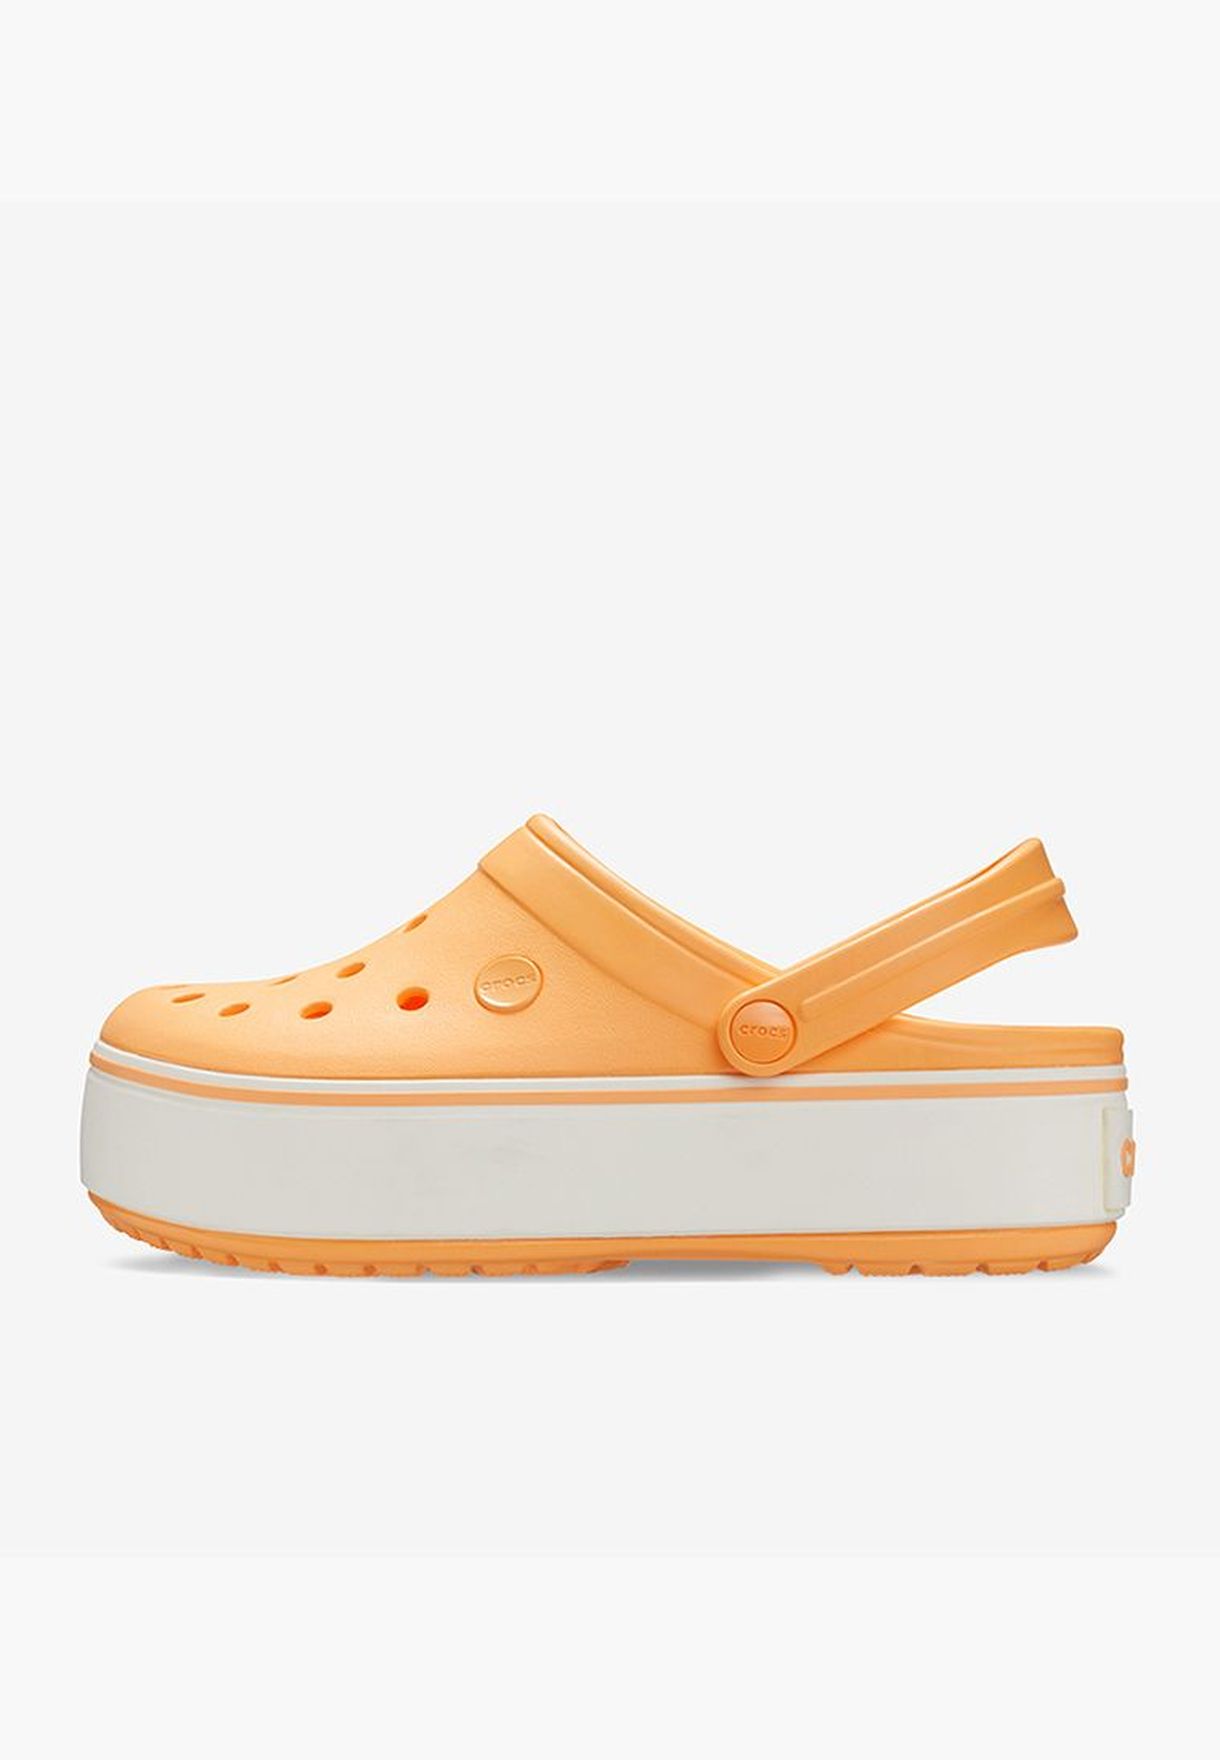 orange platform crocs